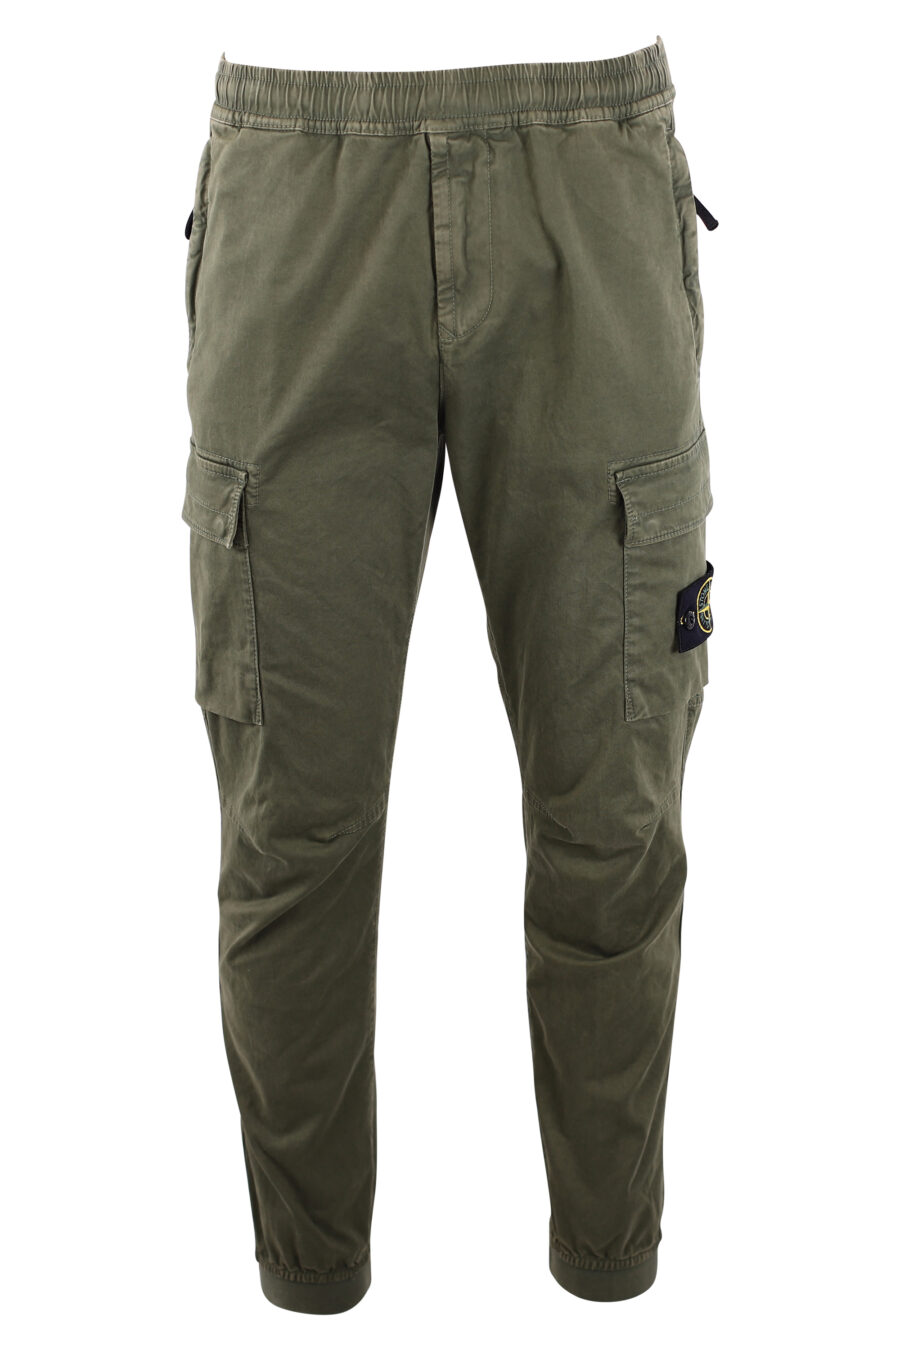 Pantalón verde militar estilo cargo con parche lateral - IMG 3196